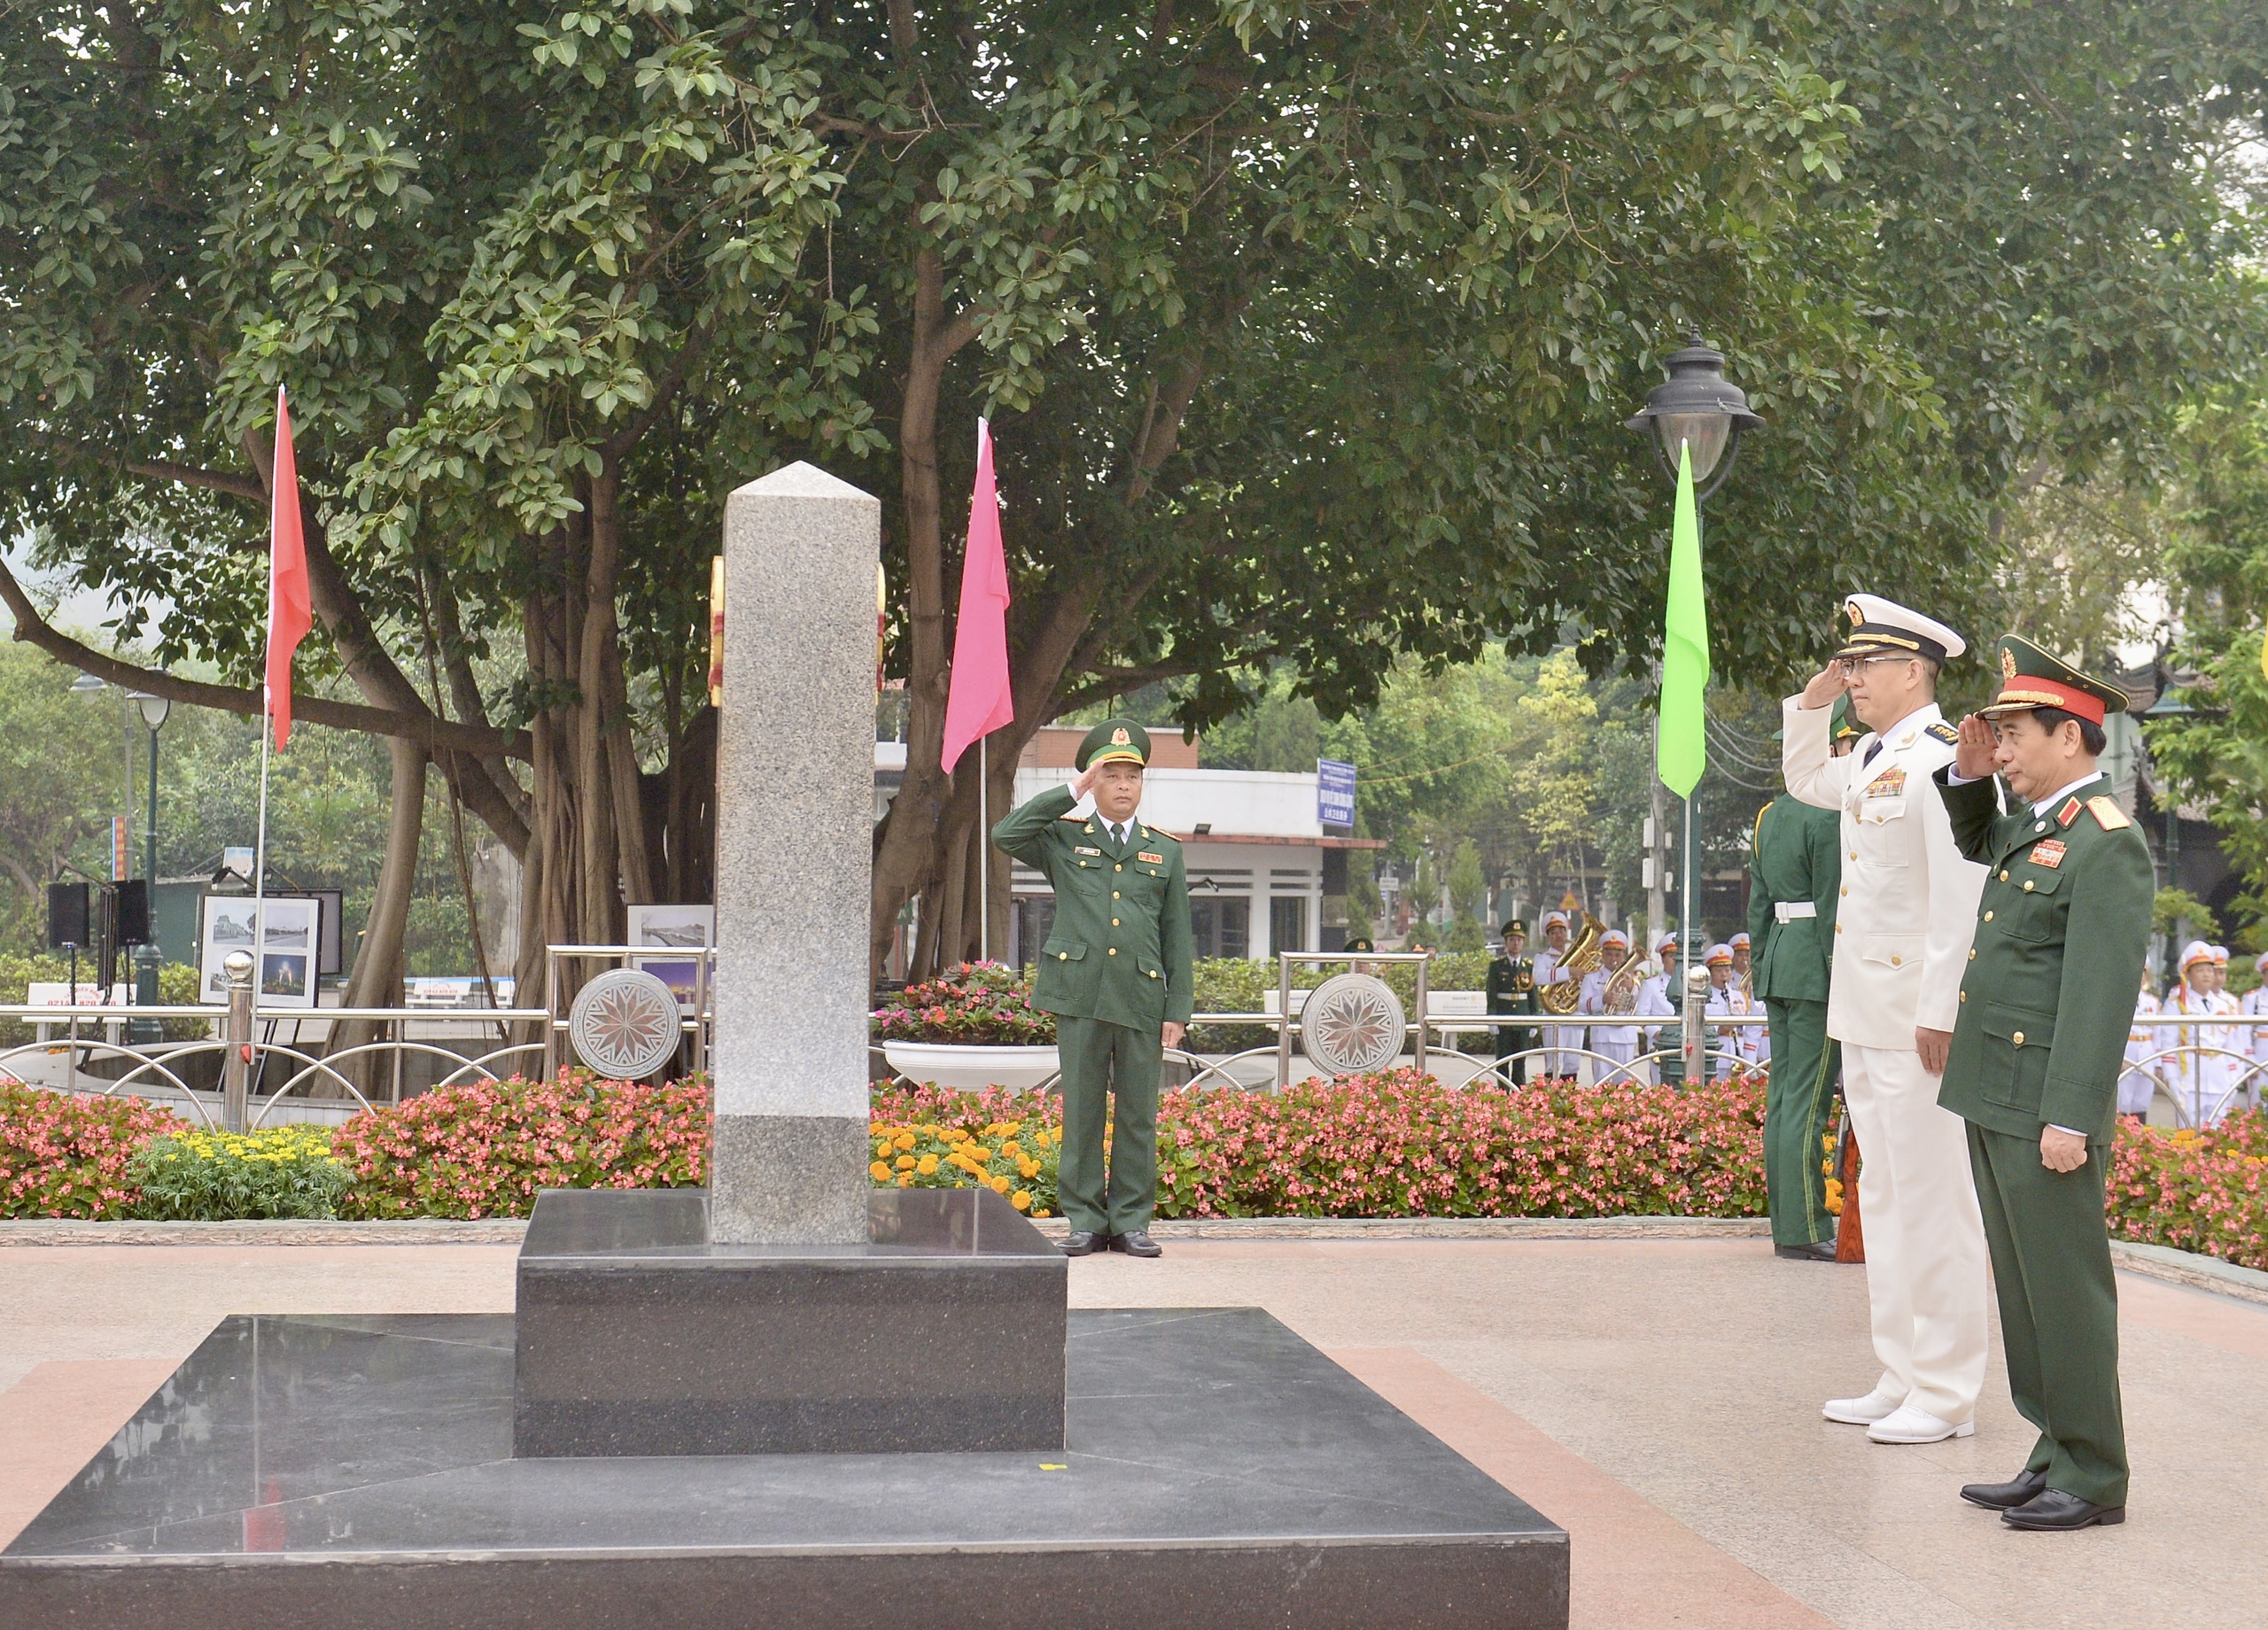 Sau lễ đón, đại tướng Phan Văn Giang và thượng tướng Đổng Quân cùng thực hiện nghi thức chào cột mốc biên giới chủ quyền 102 (2) bên phía Việt Nam